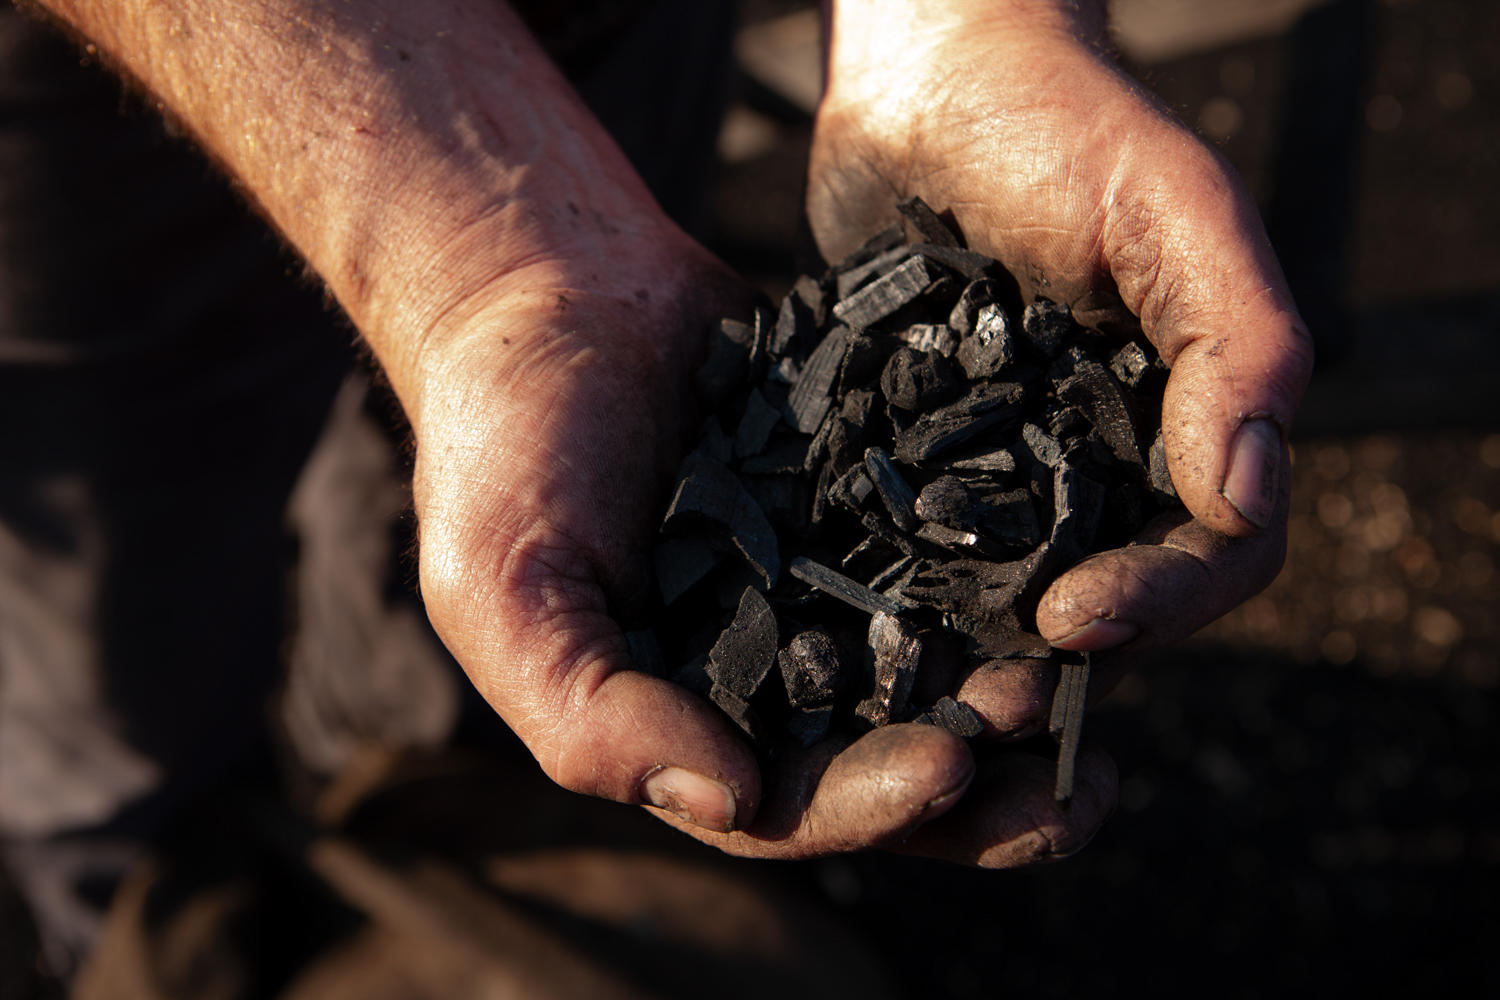 A handful of coal